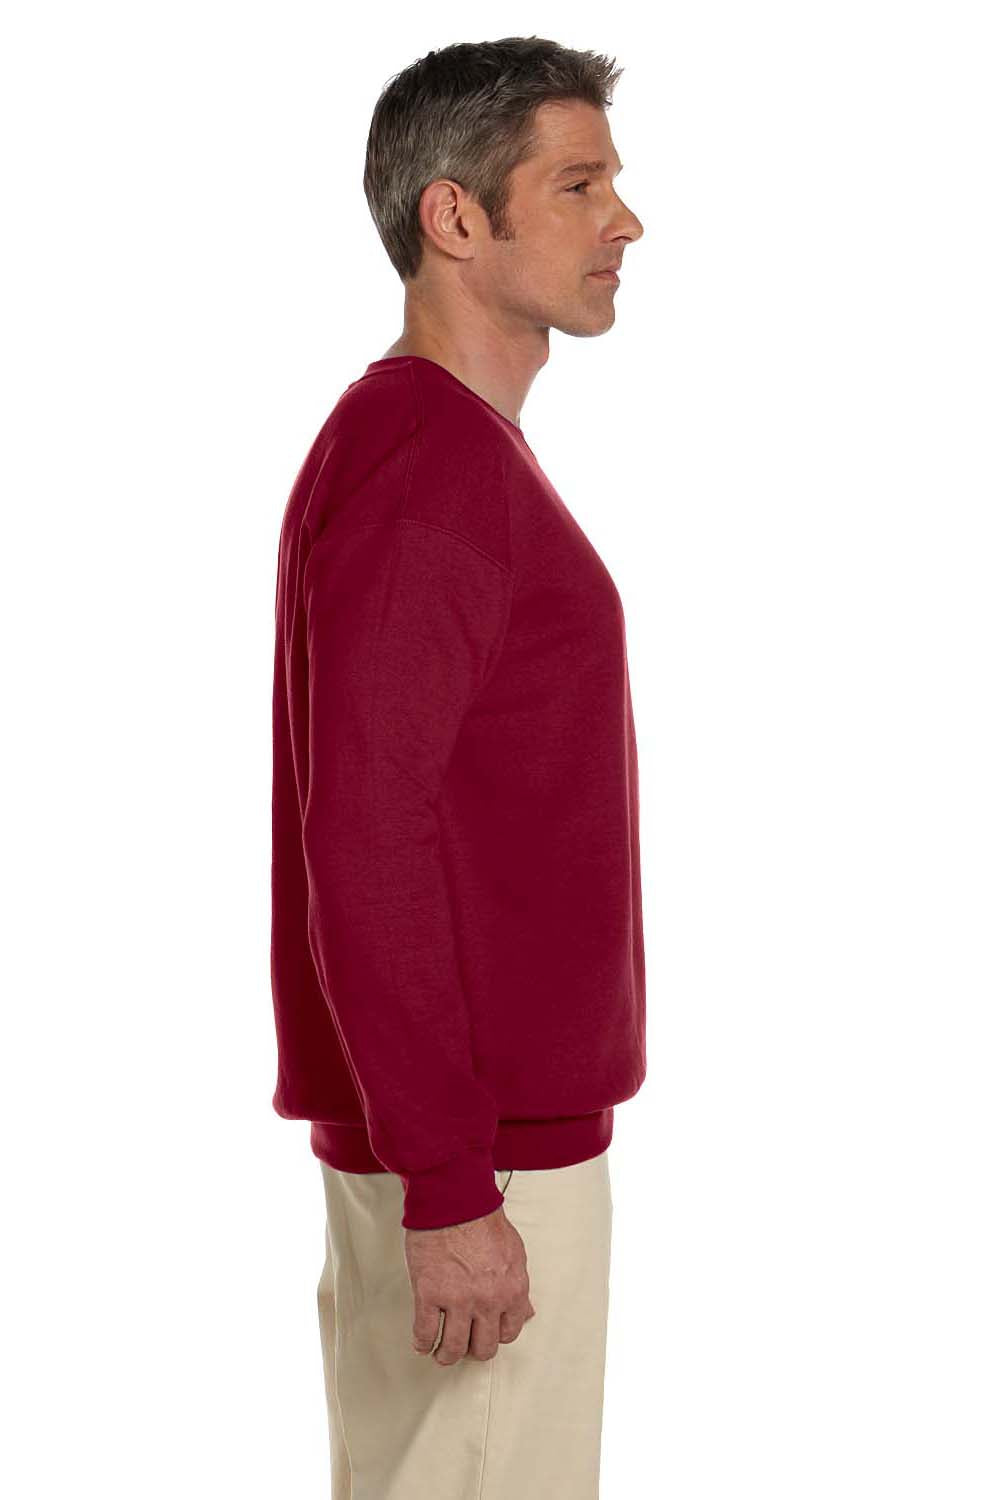 Gildan G180 Mens Fleece Crewneck Sweatshirt Antique Cherry Red Side